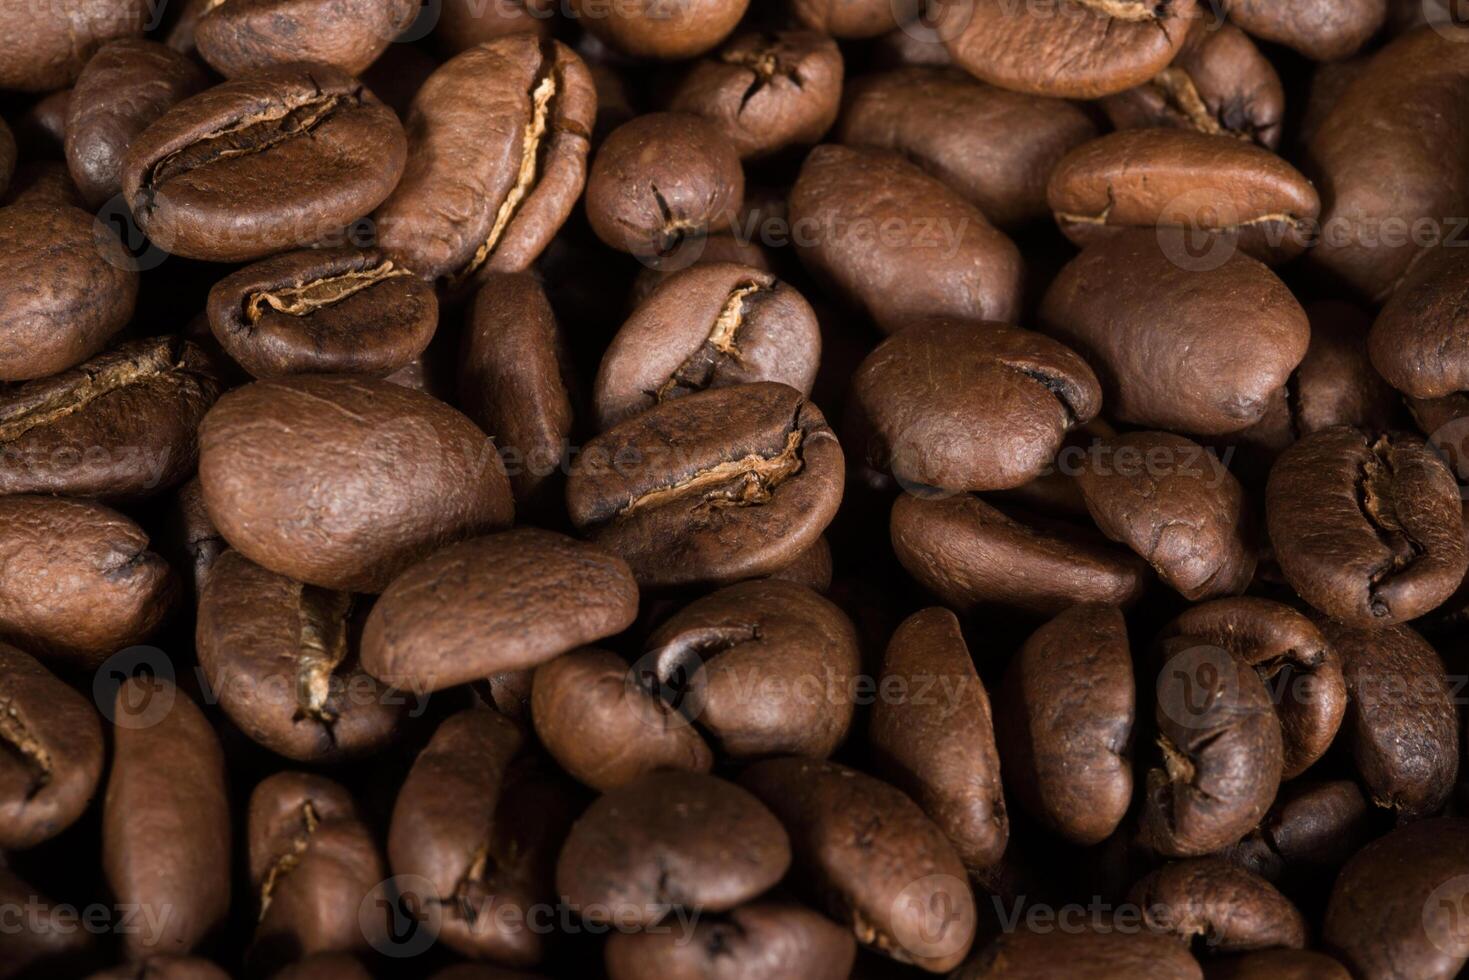 Bündel von Kaffee Körner von Mexiko foto